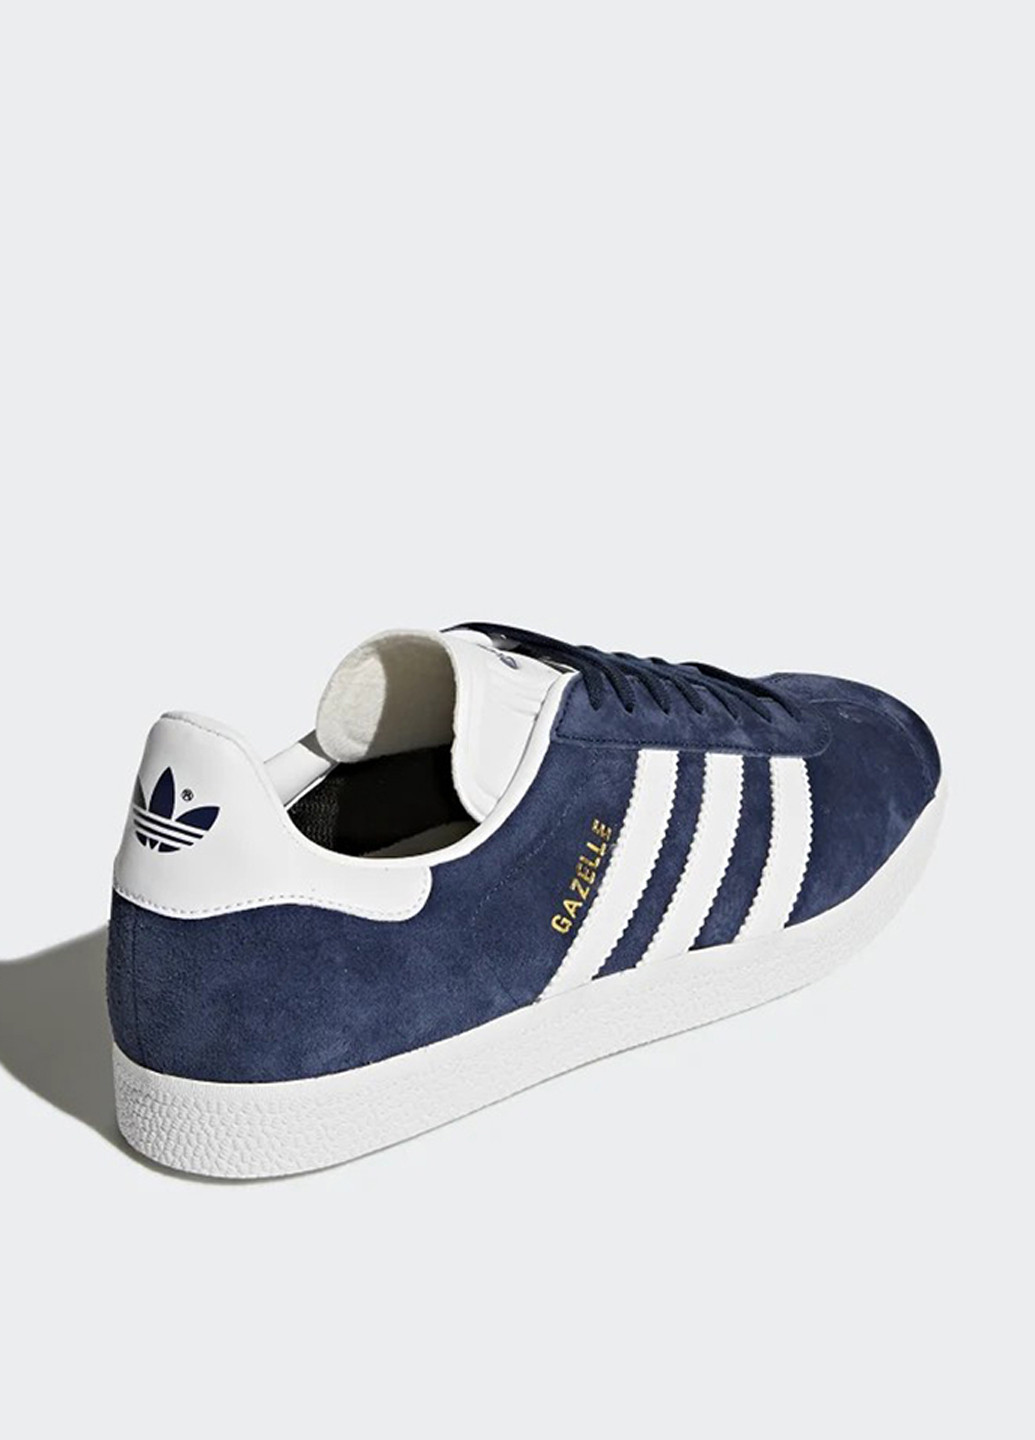 Синие всесезонные кроссовки adidas Gazelle